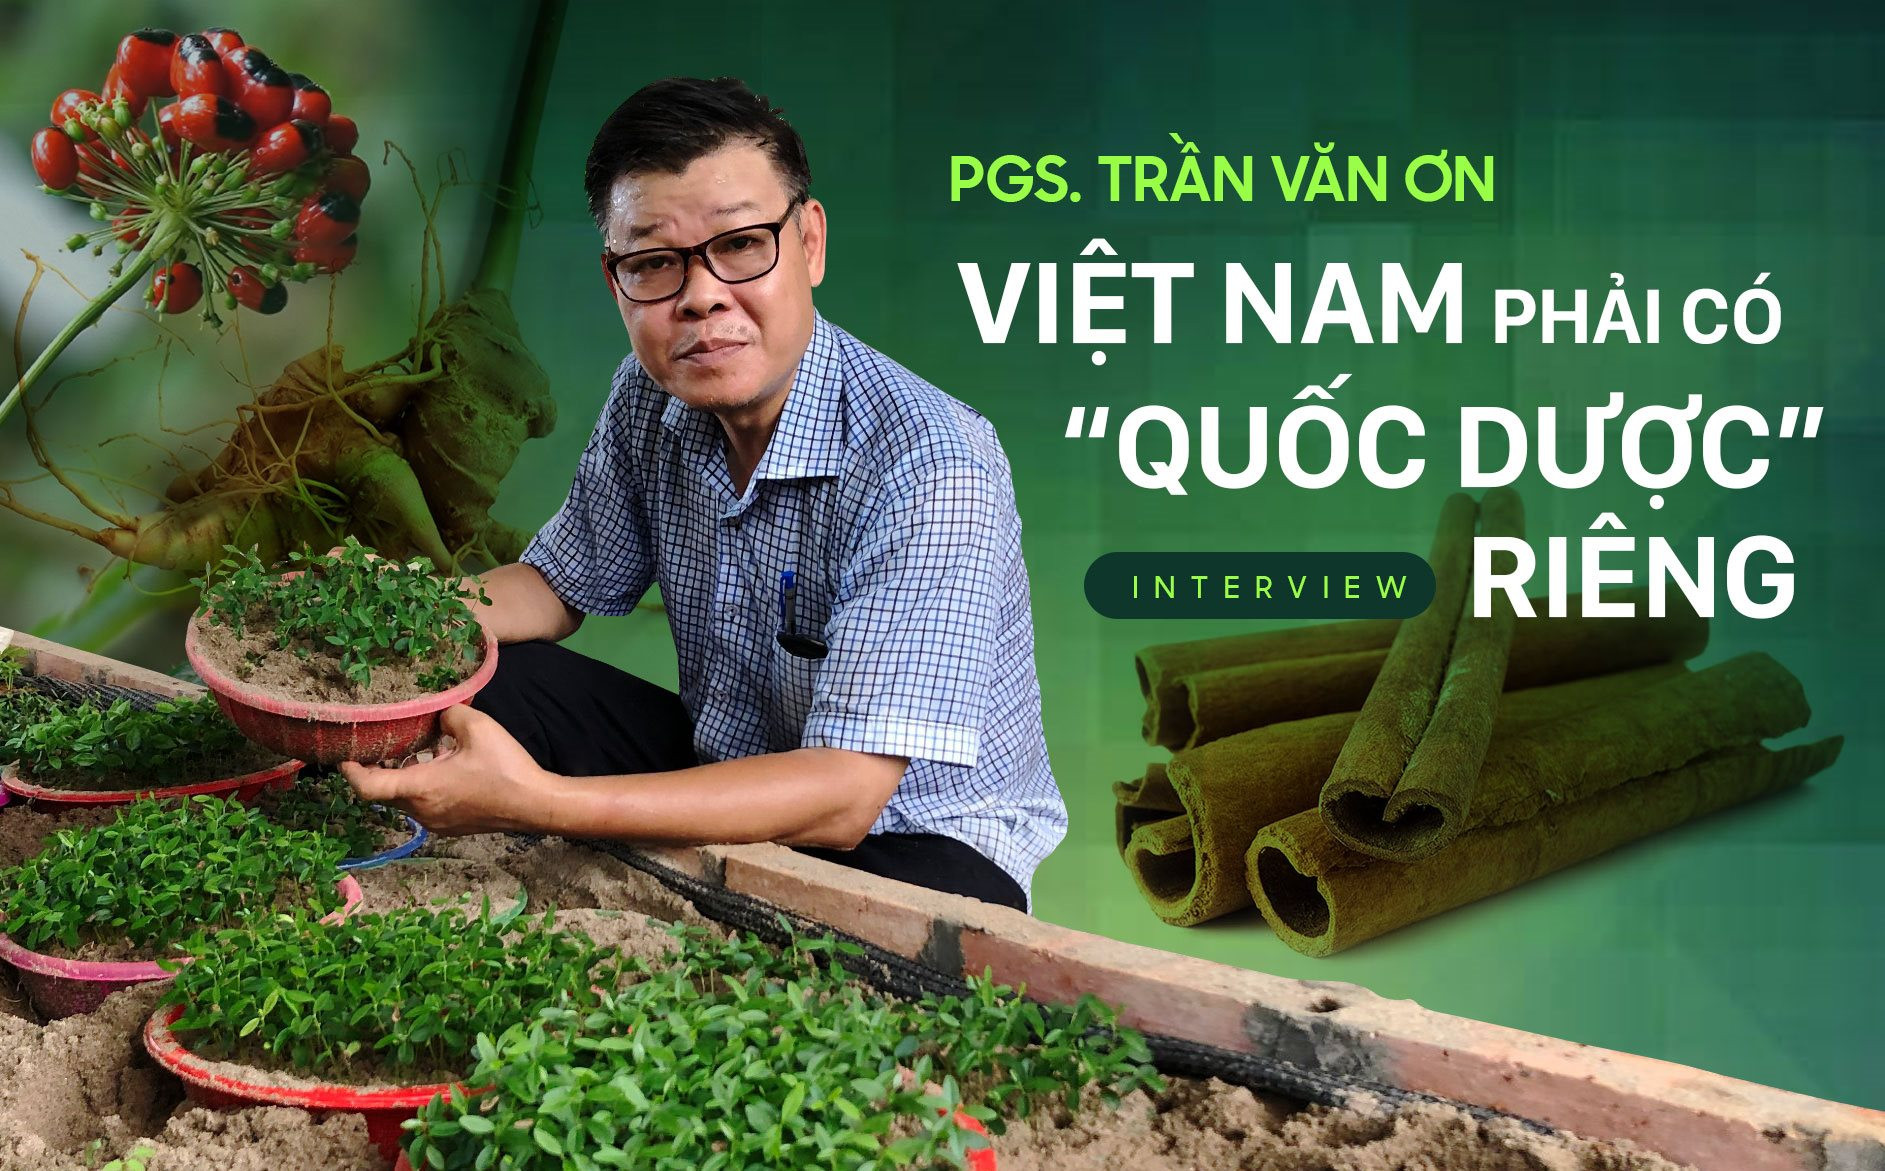 PGS. Trần Văn Ơn: Nhập 80% dược liệu thì cũng không cần hoảng hốt, nếu phát triển đúng, riêng cây quế có thể mang về cho Việt Nam cả tỷ đô la mỗi năm - Ảnh 1.